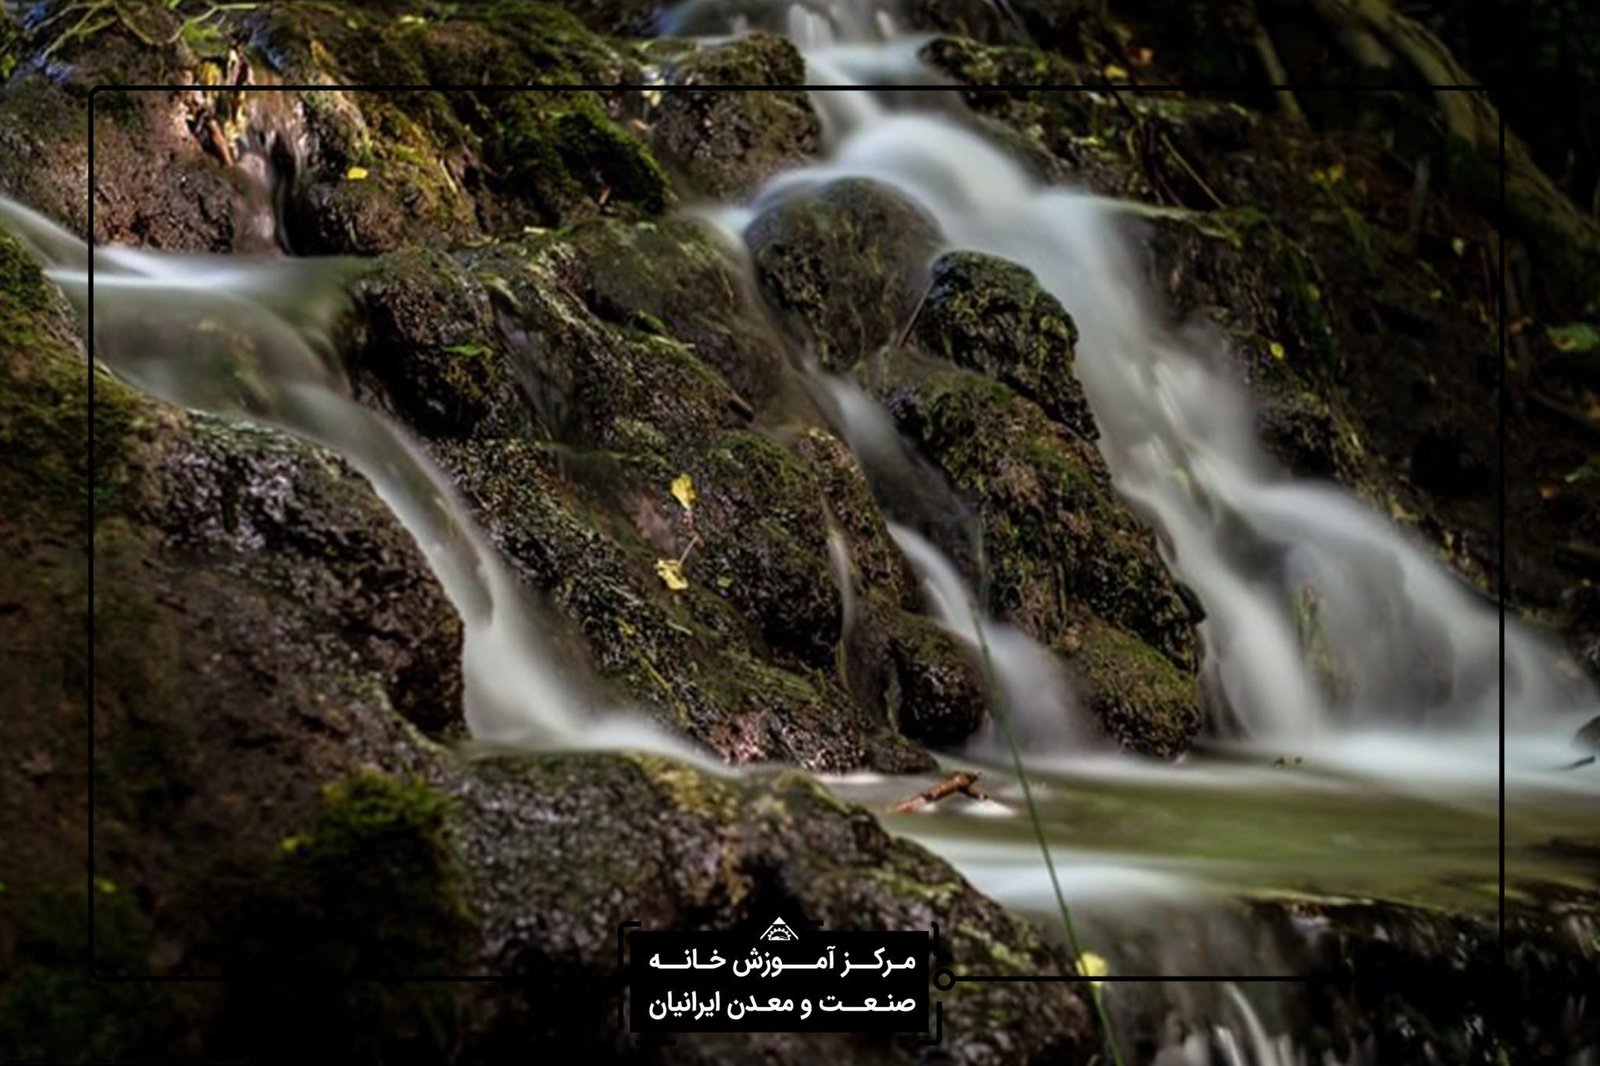 آموزش عکاسی تخصصی در شیراز